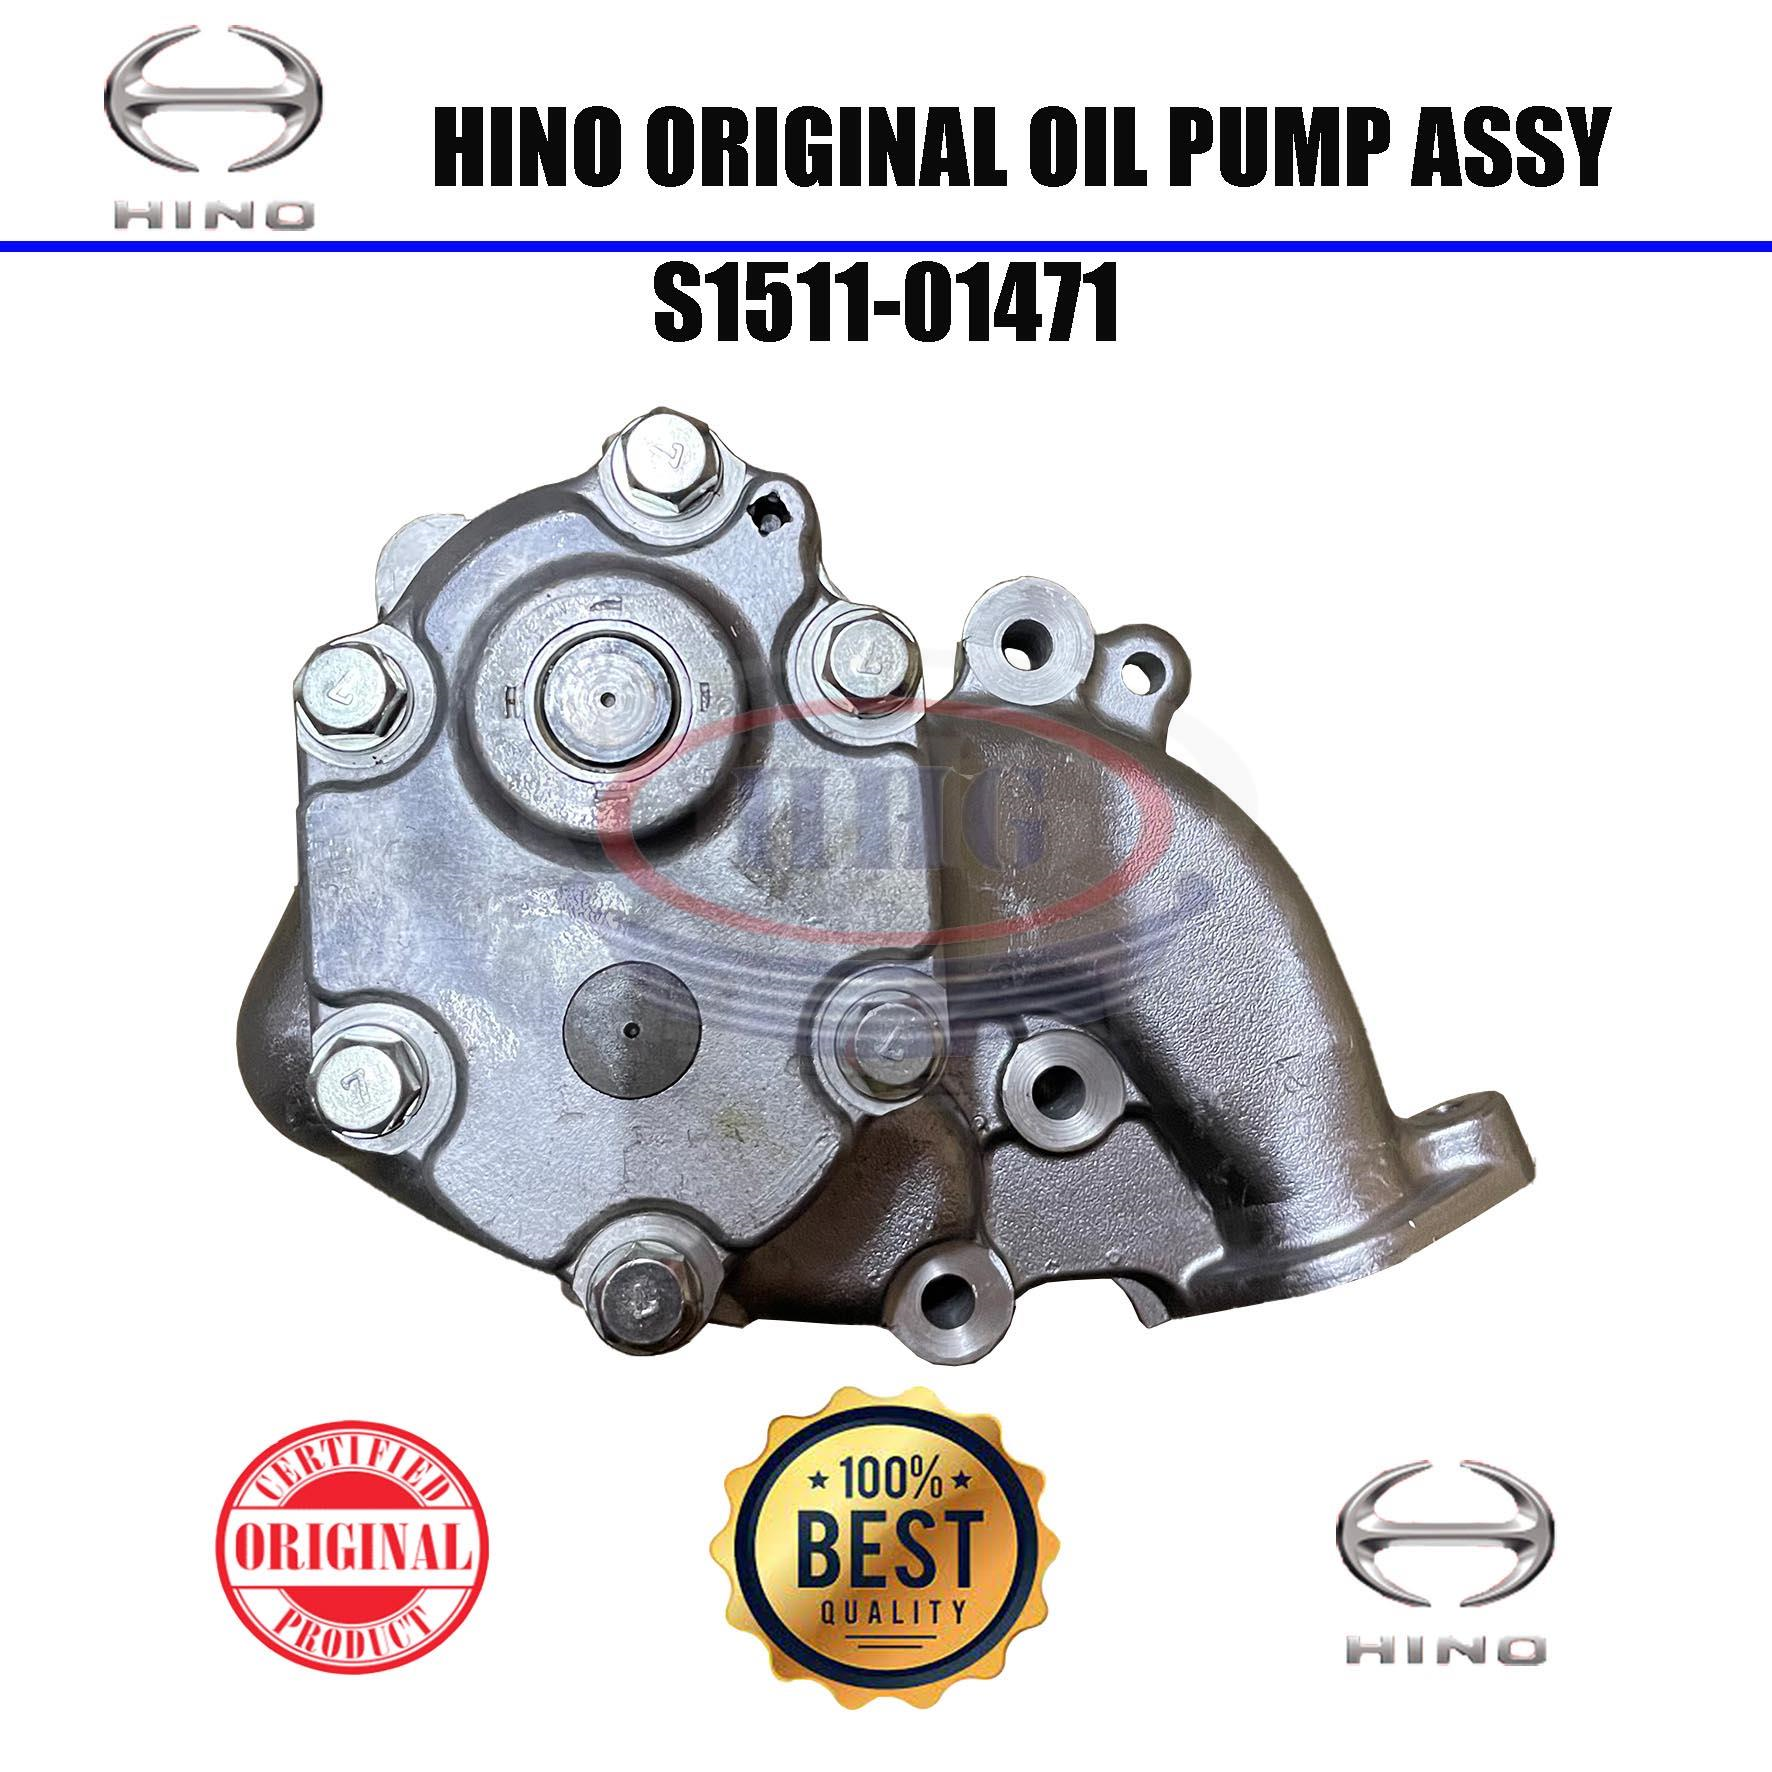 Hino Original EP100 EM100 Oil Pump Assy (S1511-01471)